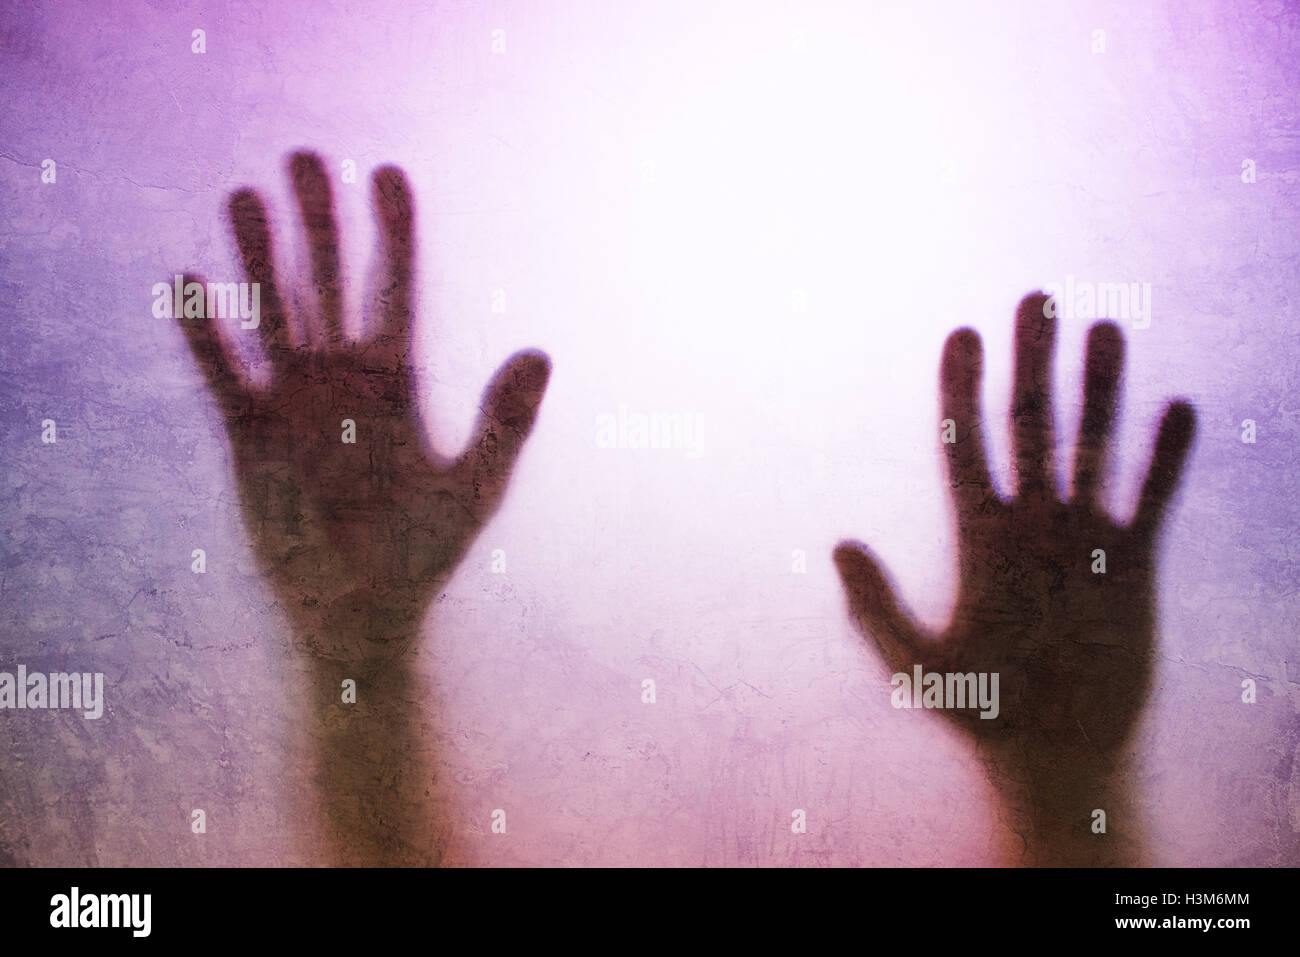 Eingeschlossene Person Konzept mit Rückseite beleuchteten Silhouette der Hände hinter Mattglas, nützlich als anschauliches Bild für den Menschenhandel, Stockfoto